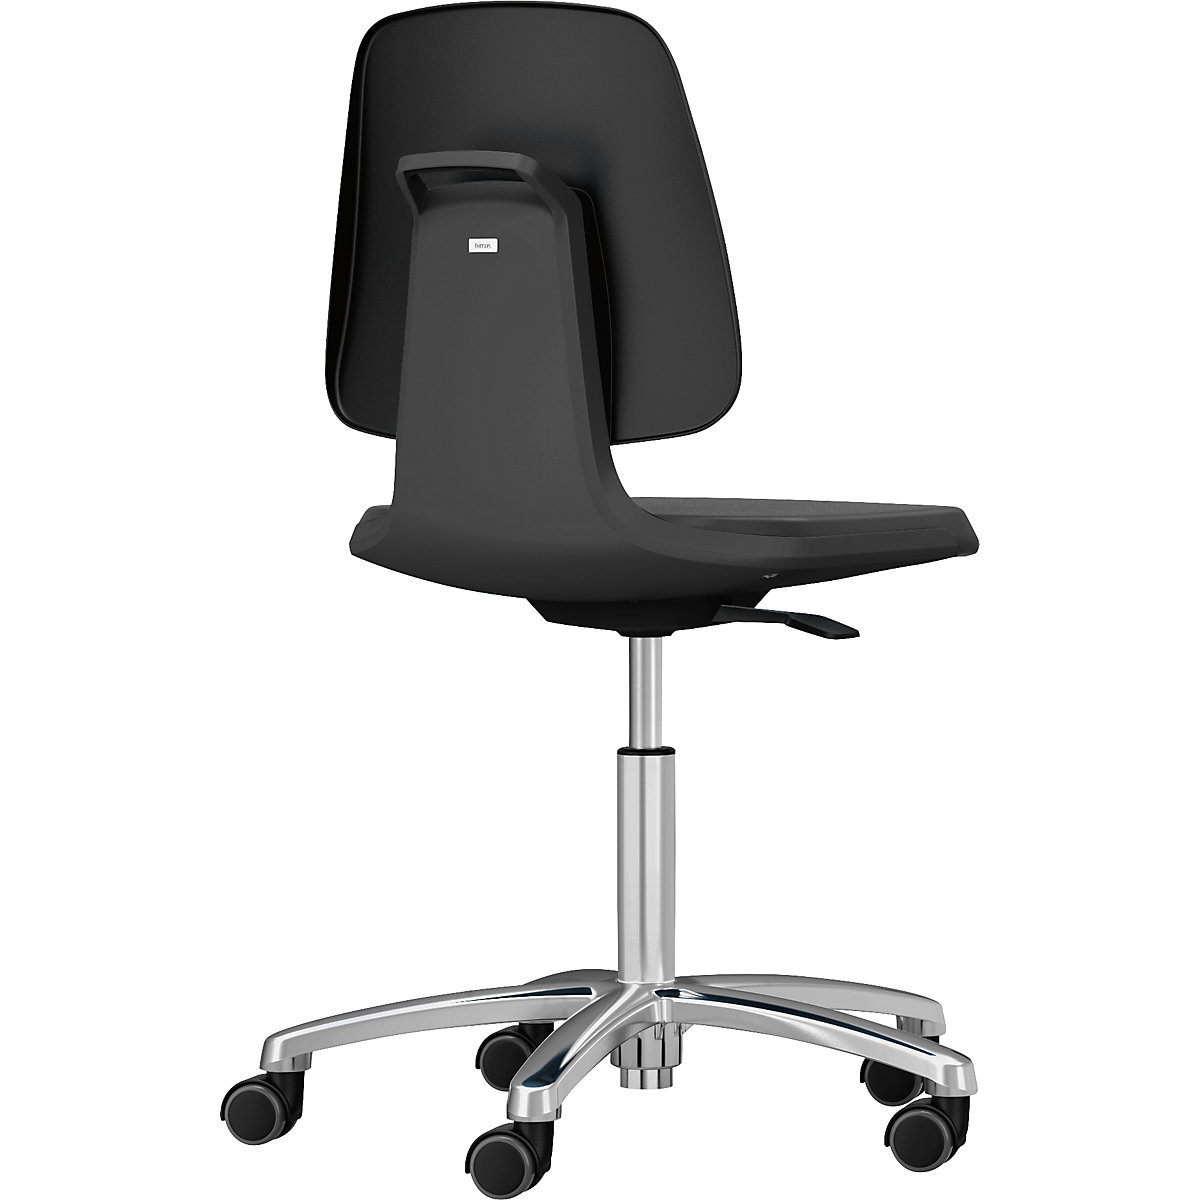 Pracovní otočná židle LABSIT – bimos, pět noh s kolečky, sedák s koženkovým potahem, antracitová barva-10